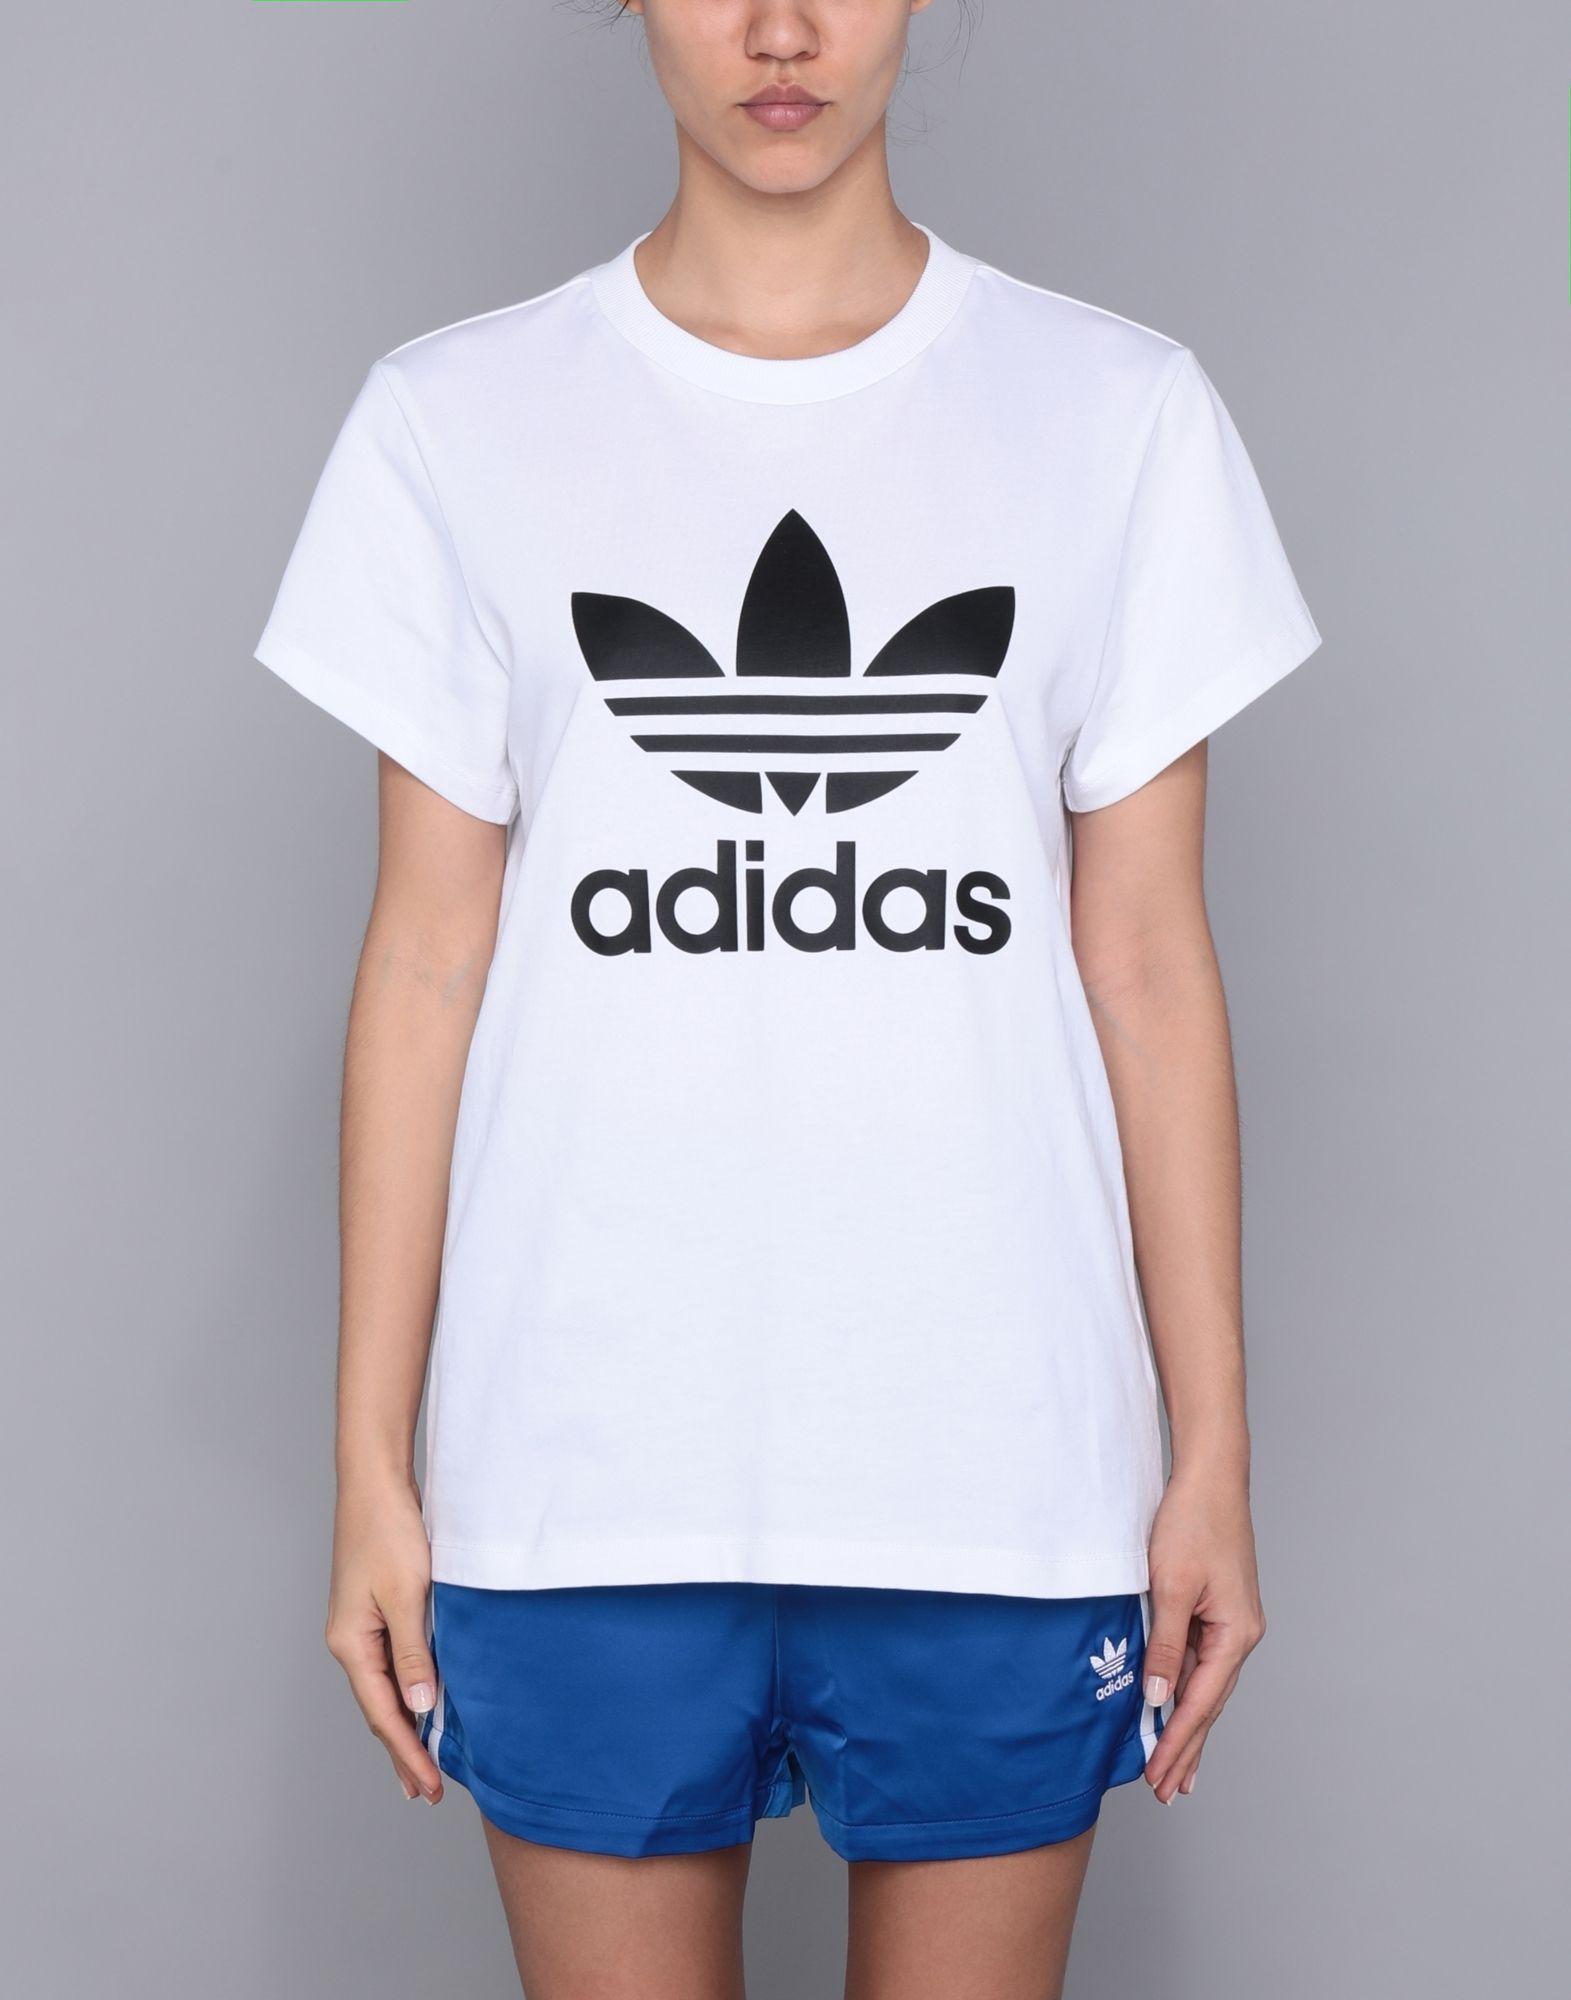 adidas Originals Cotton T-shirt in White - Lyst